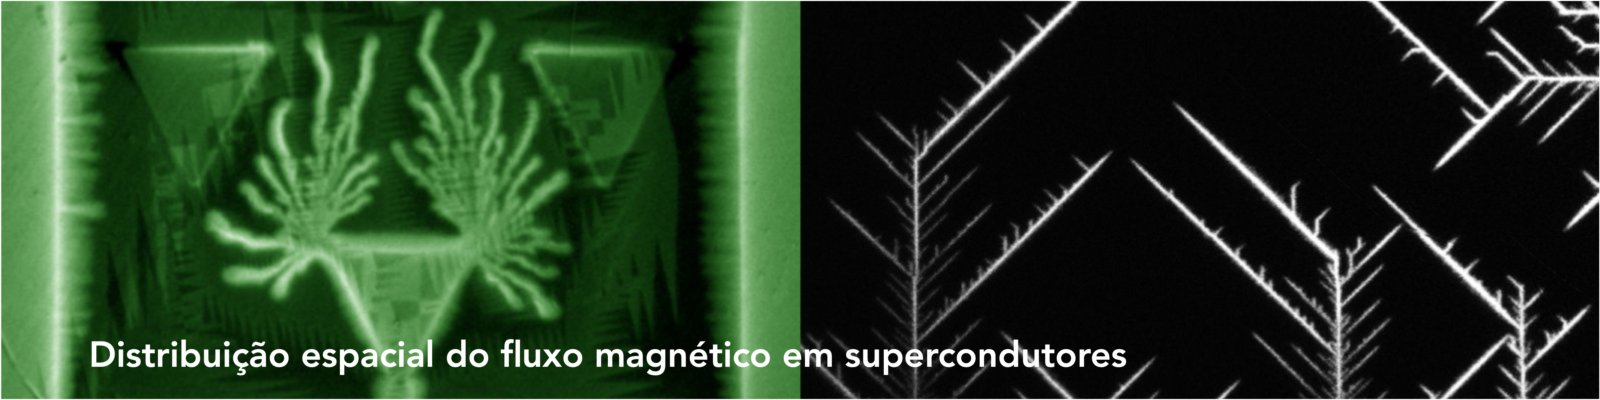 Prêmios CNPq Fotografia - Ciência e Arte (2013 e 2011). Fluxo magnético em supercondutores.